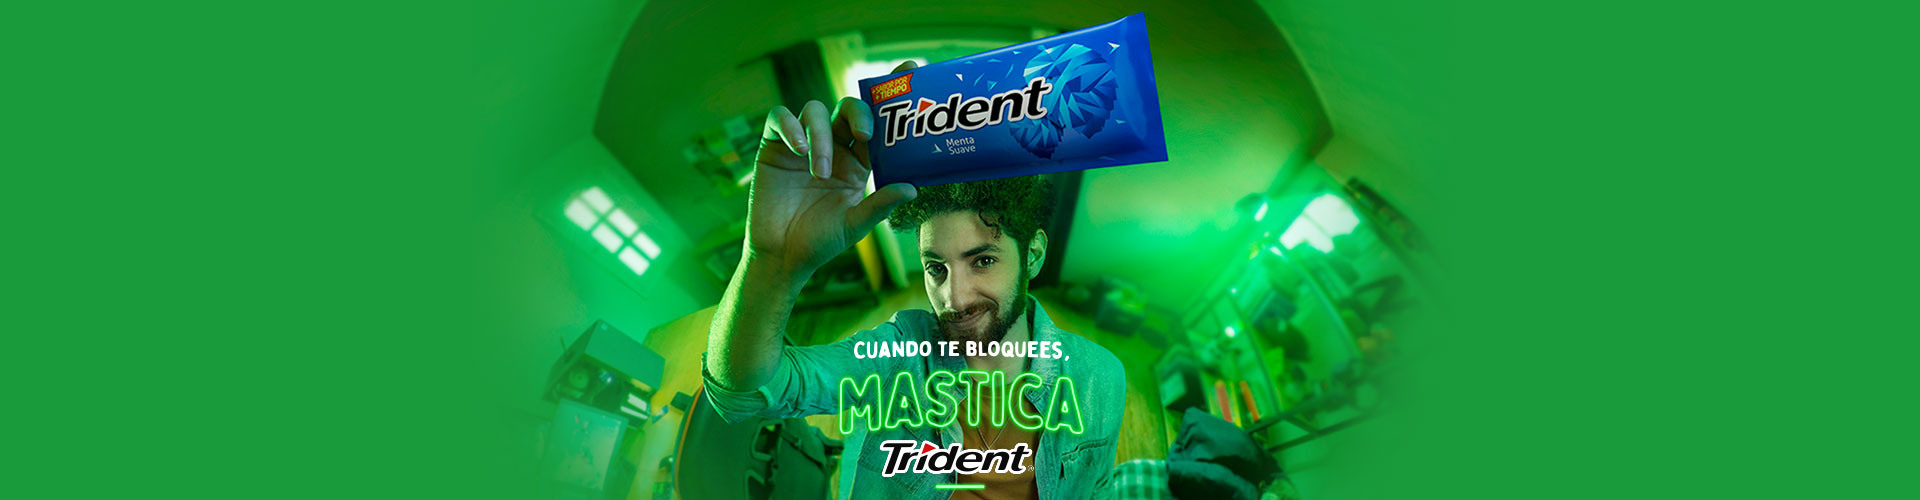 ¿Sabías que Trident es el snack oficial de los gamers?